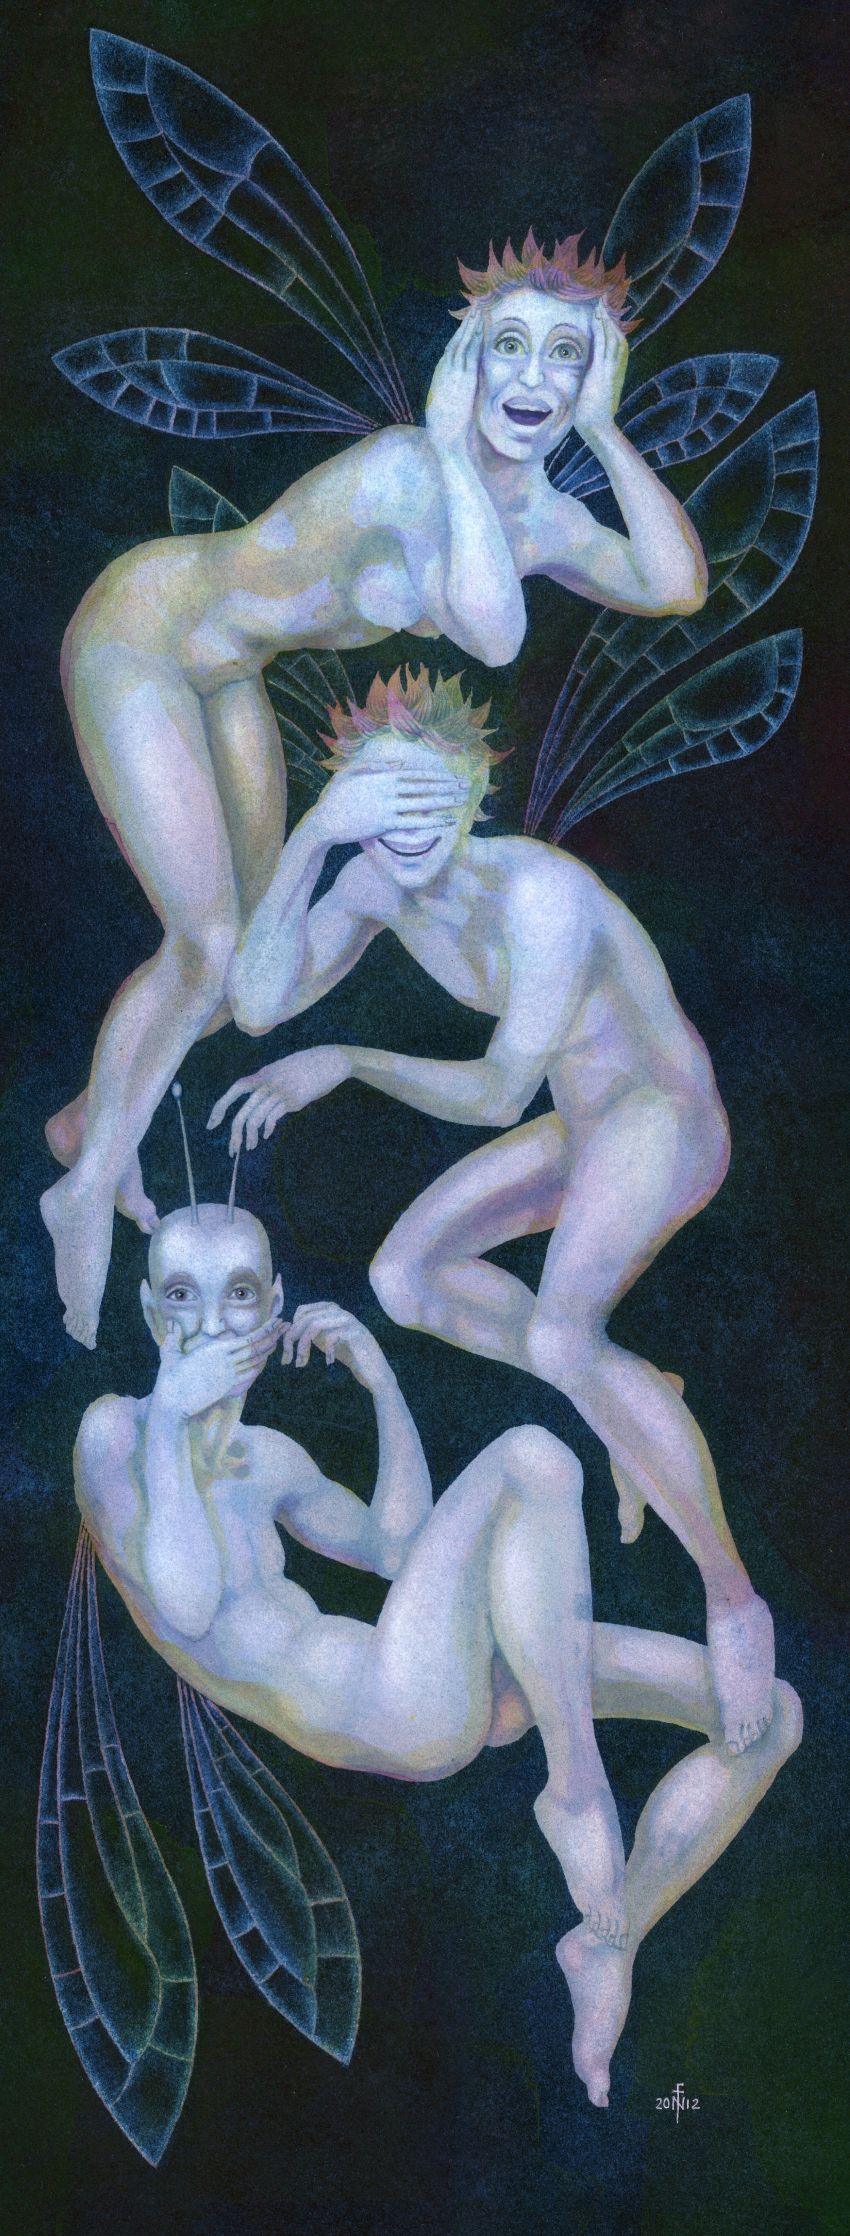 'Three Wise Fairies' - painting in gouache by Nancy Farmer